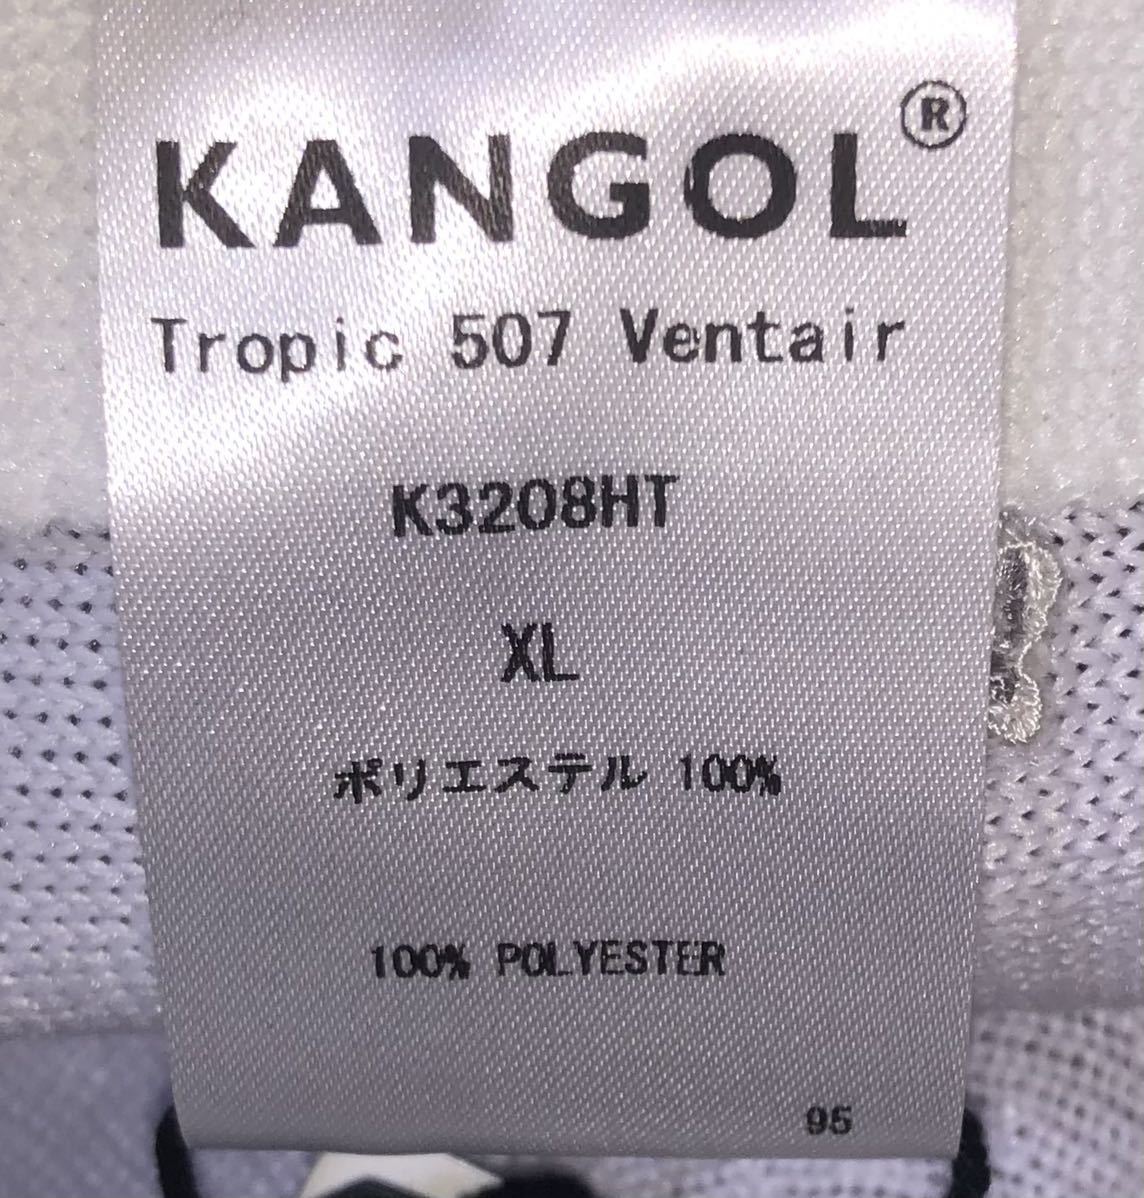 新品 KANGOL Tropic 507 Ventair K3208HT XL カンゴール トロピック ベントエアー ハンチングキャップ ベレー帽 ホワイト 白 504 男女兼用_画像6